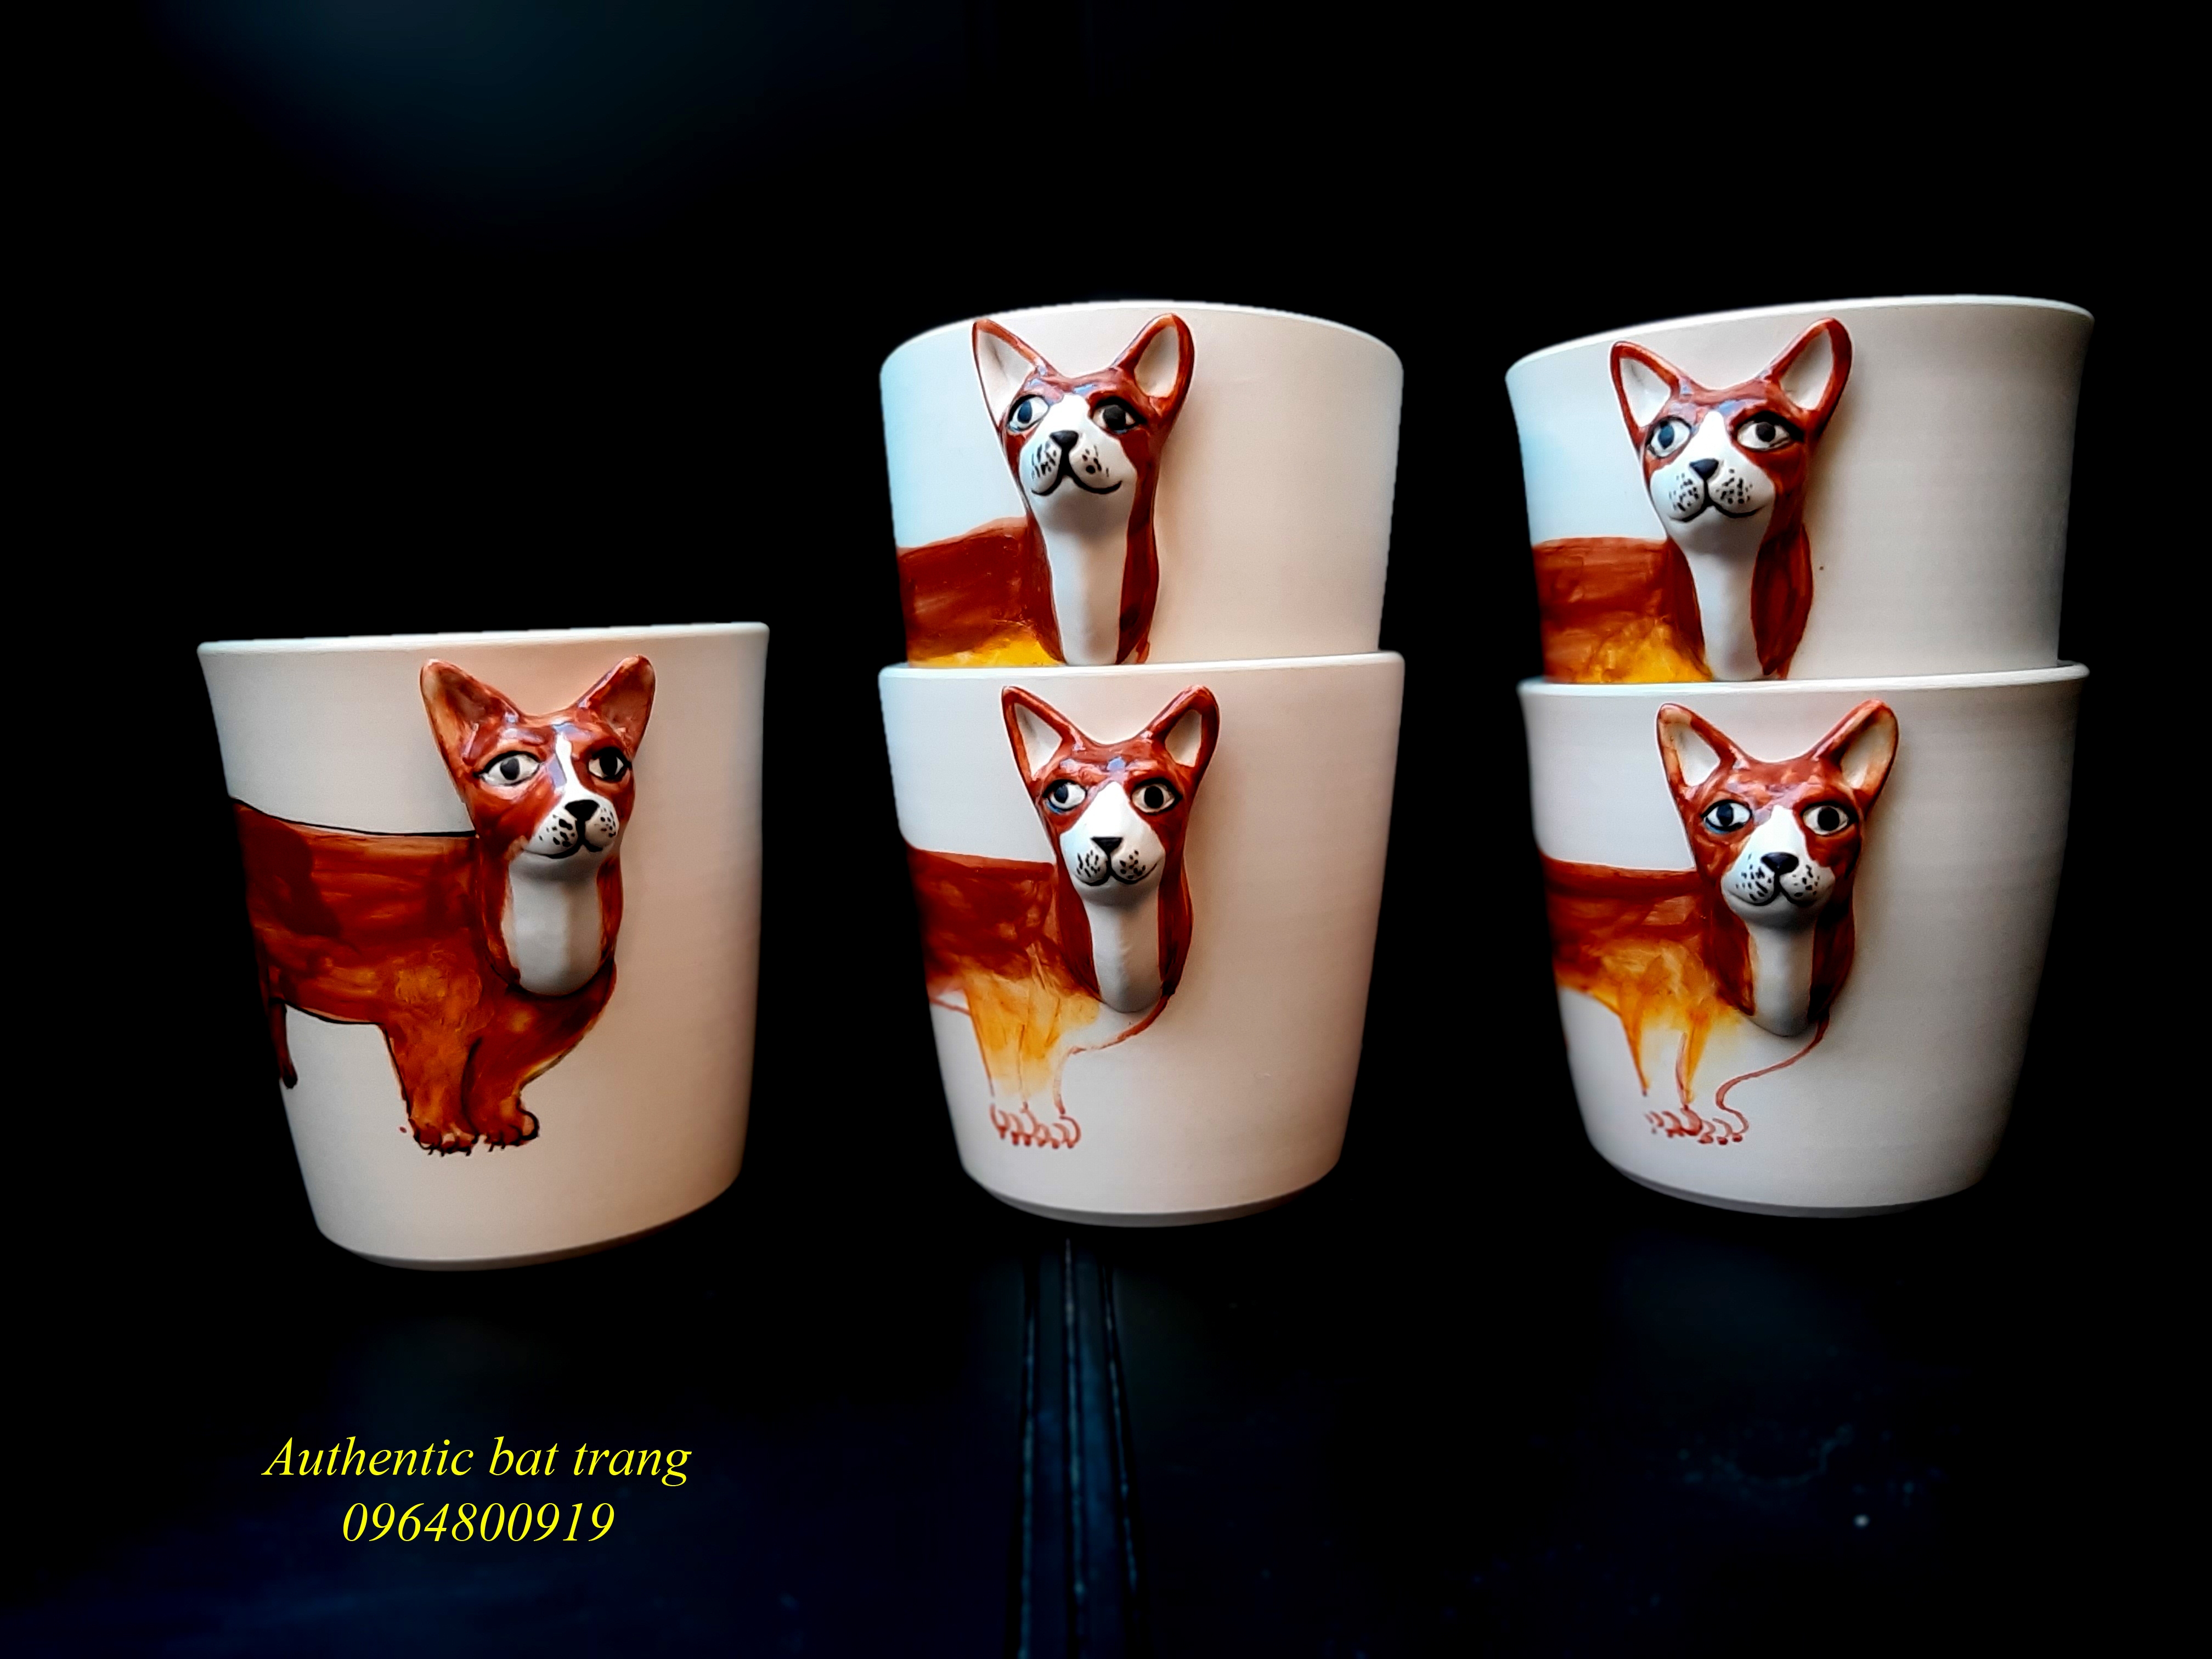 Animals cups- Cốc động vật sản phẩm vẽ tay và đắp tay thủ côc độc đáo, sản xuất tại xưởng gốm sứ Authentic bat trang